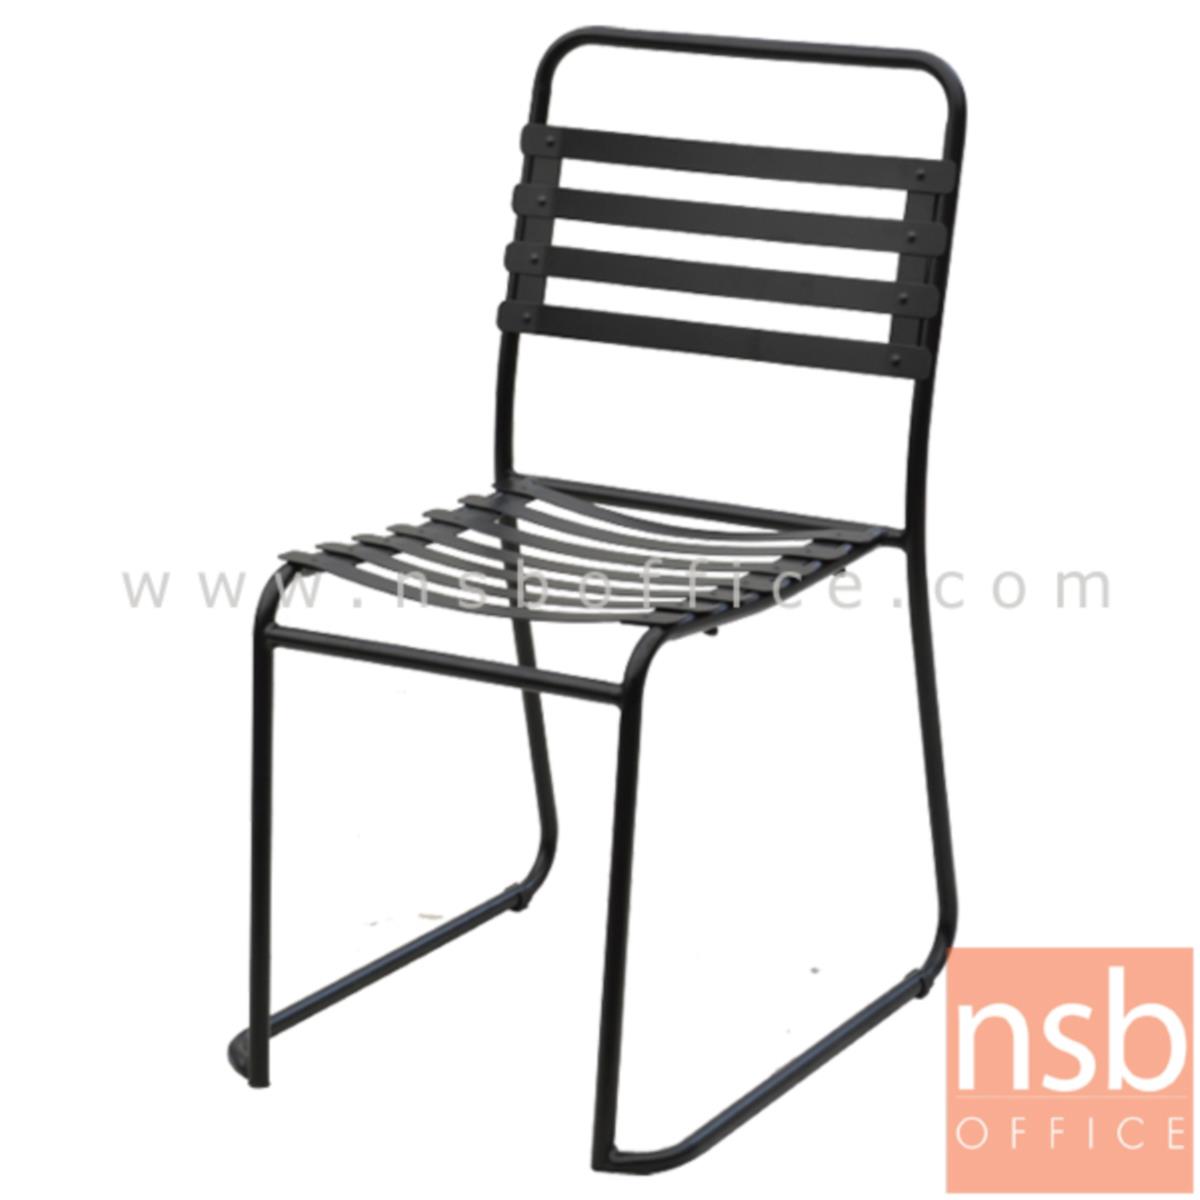 เก้าอี้โมเดิร์นเหล็ก รุ่น PC-06922 ขนาด 46W cm. โครงขาเหล็ก